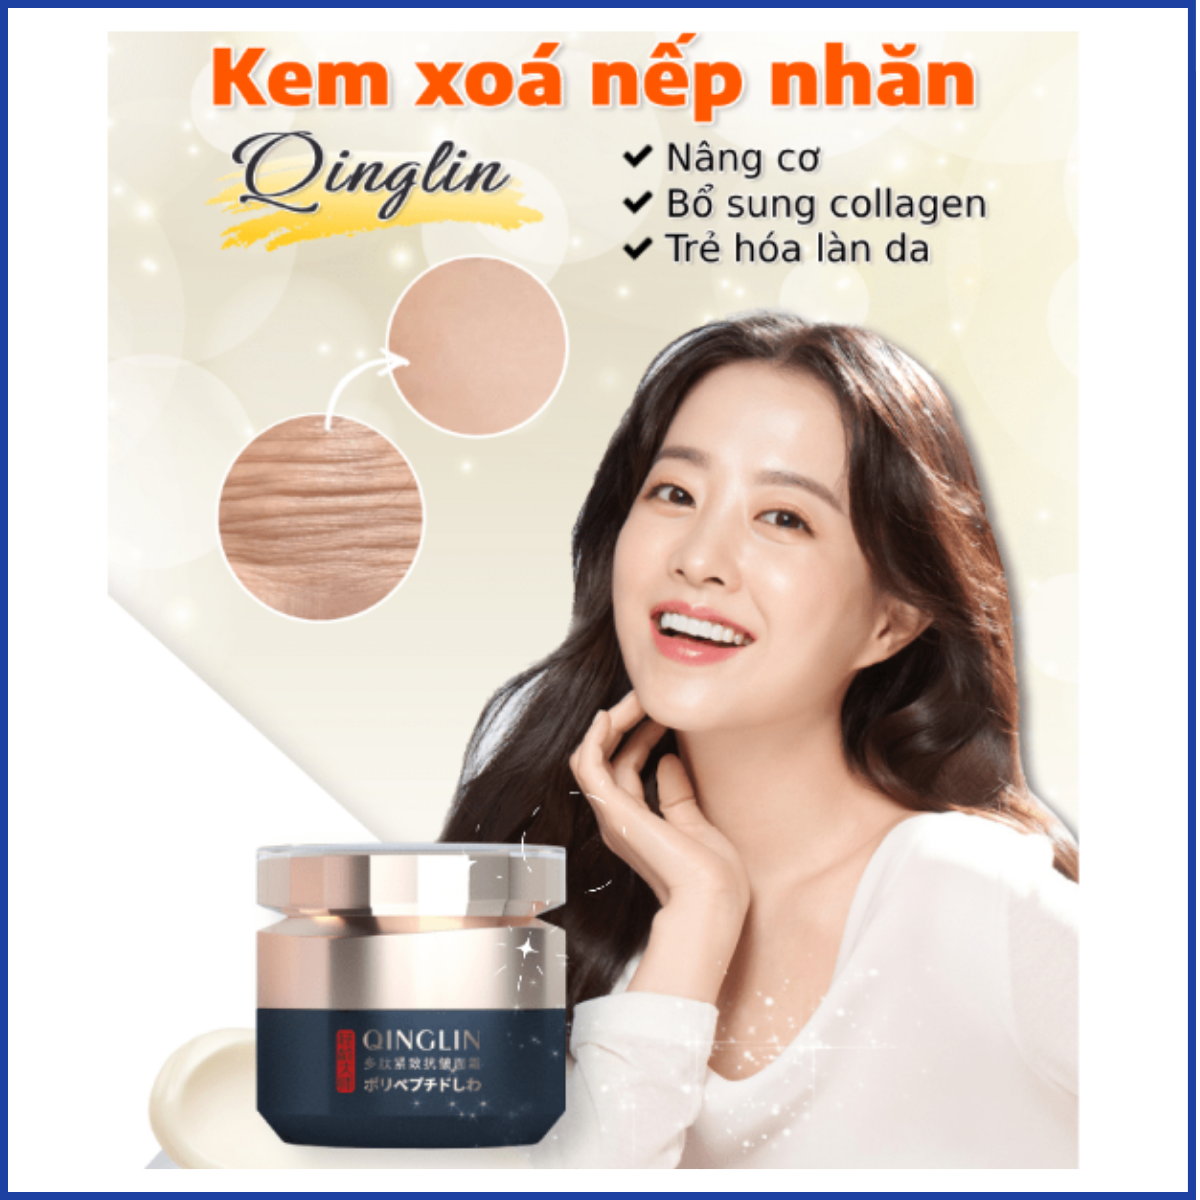 Kem xoá nhăn Qinglin - Giúp nâng cơ, xoá nếp nhăn, ngăn ngừa da lão hoá và trẻ hoá làn da, bổ sung collagen cho da khoẻ mạnh